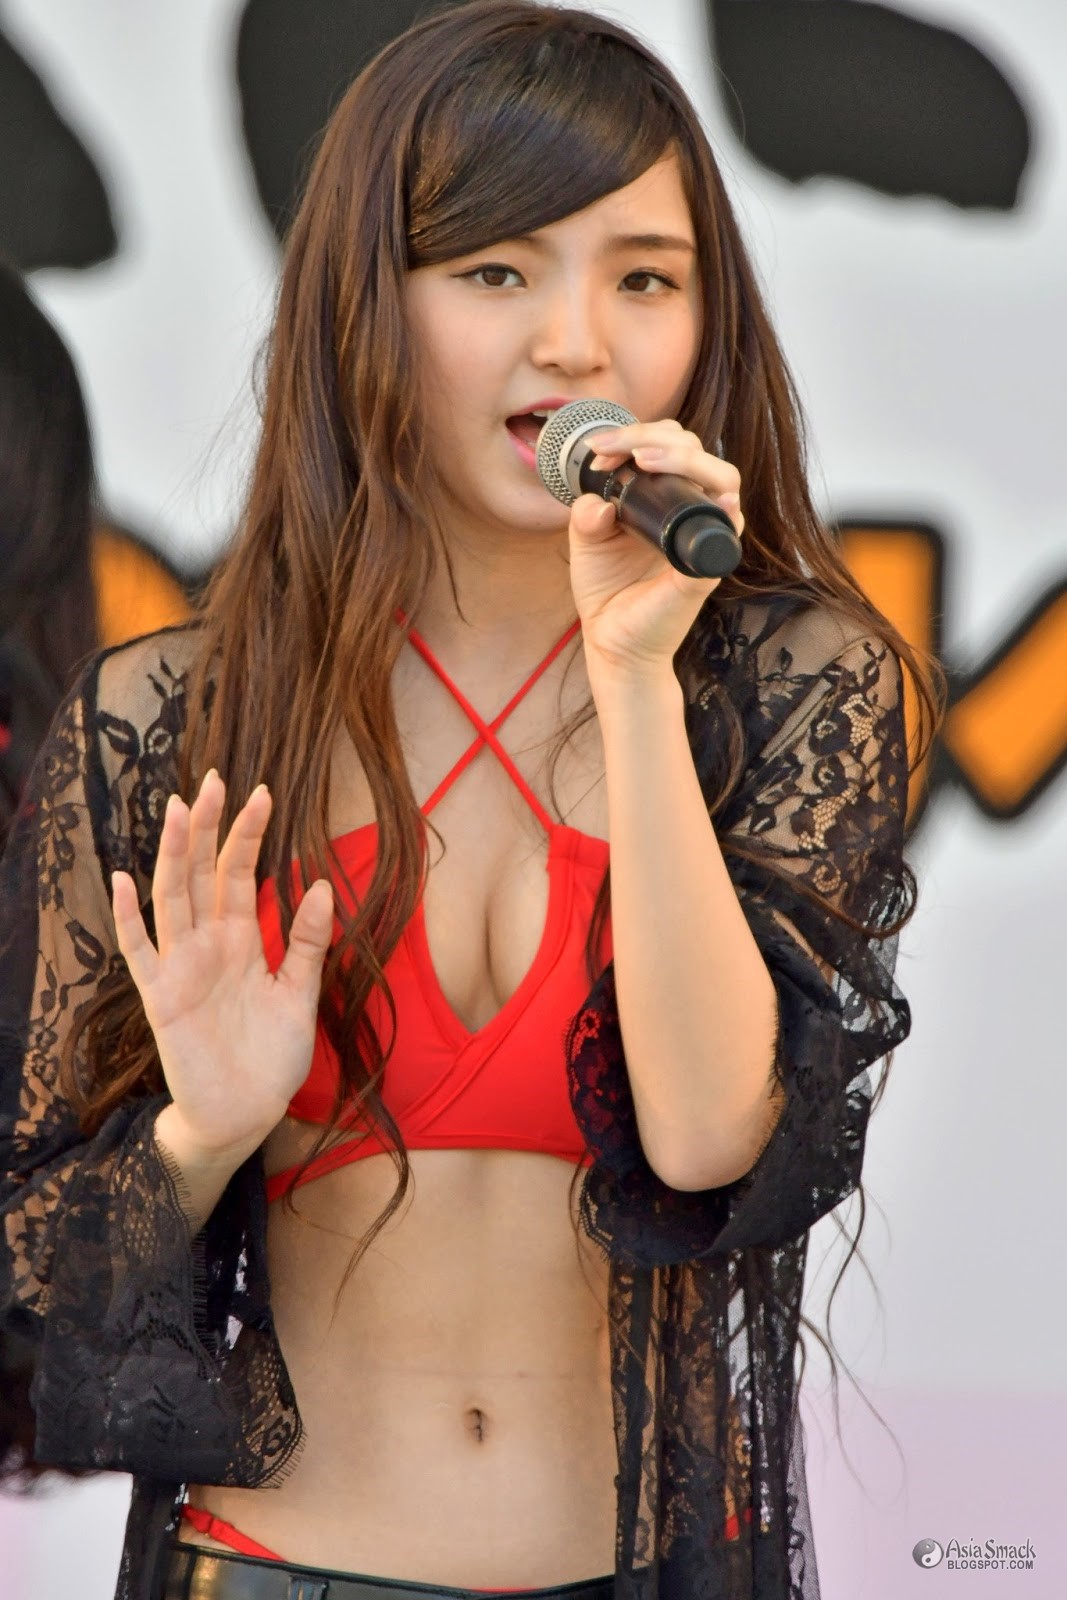 The 13 years old Japanese idol Nakamura Tina. 